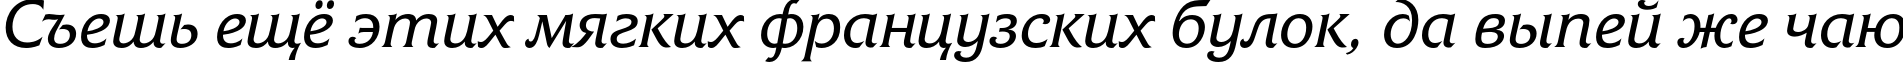 Пример написания шрифтом FrizQuadrataC Italic текста на русском